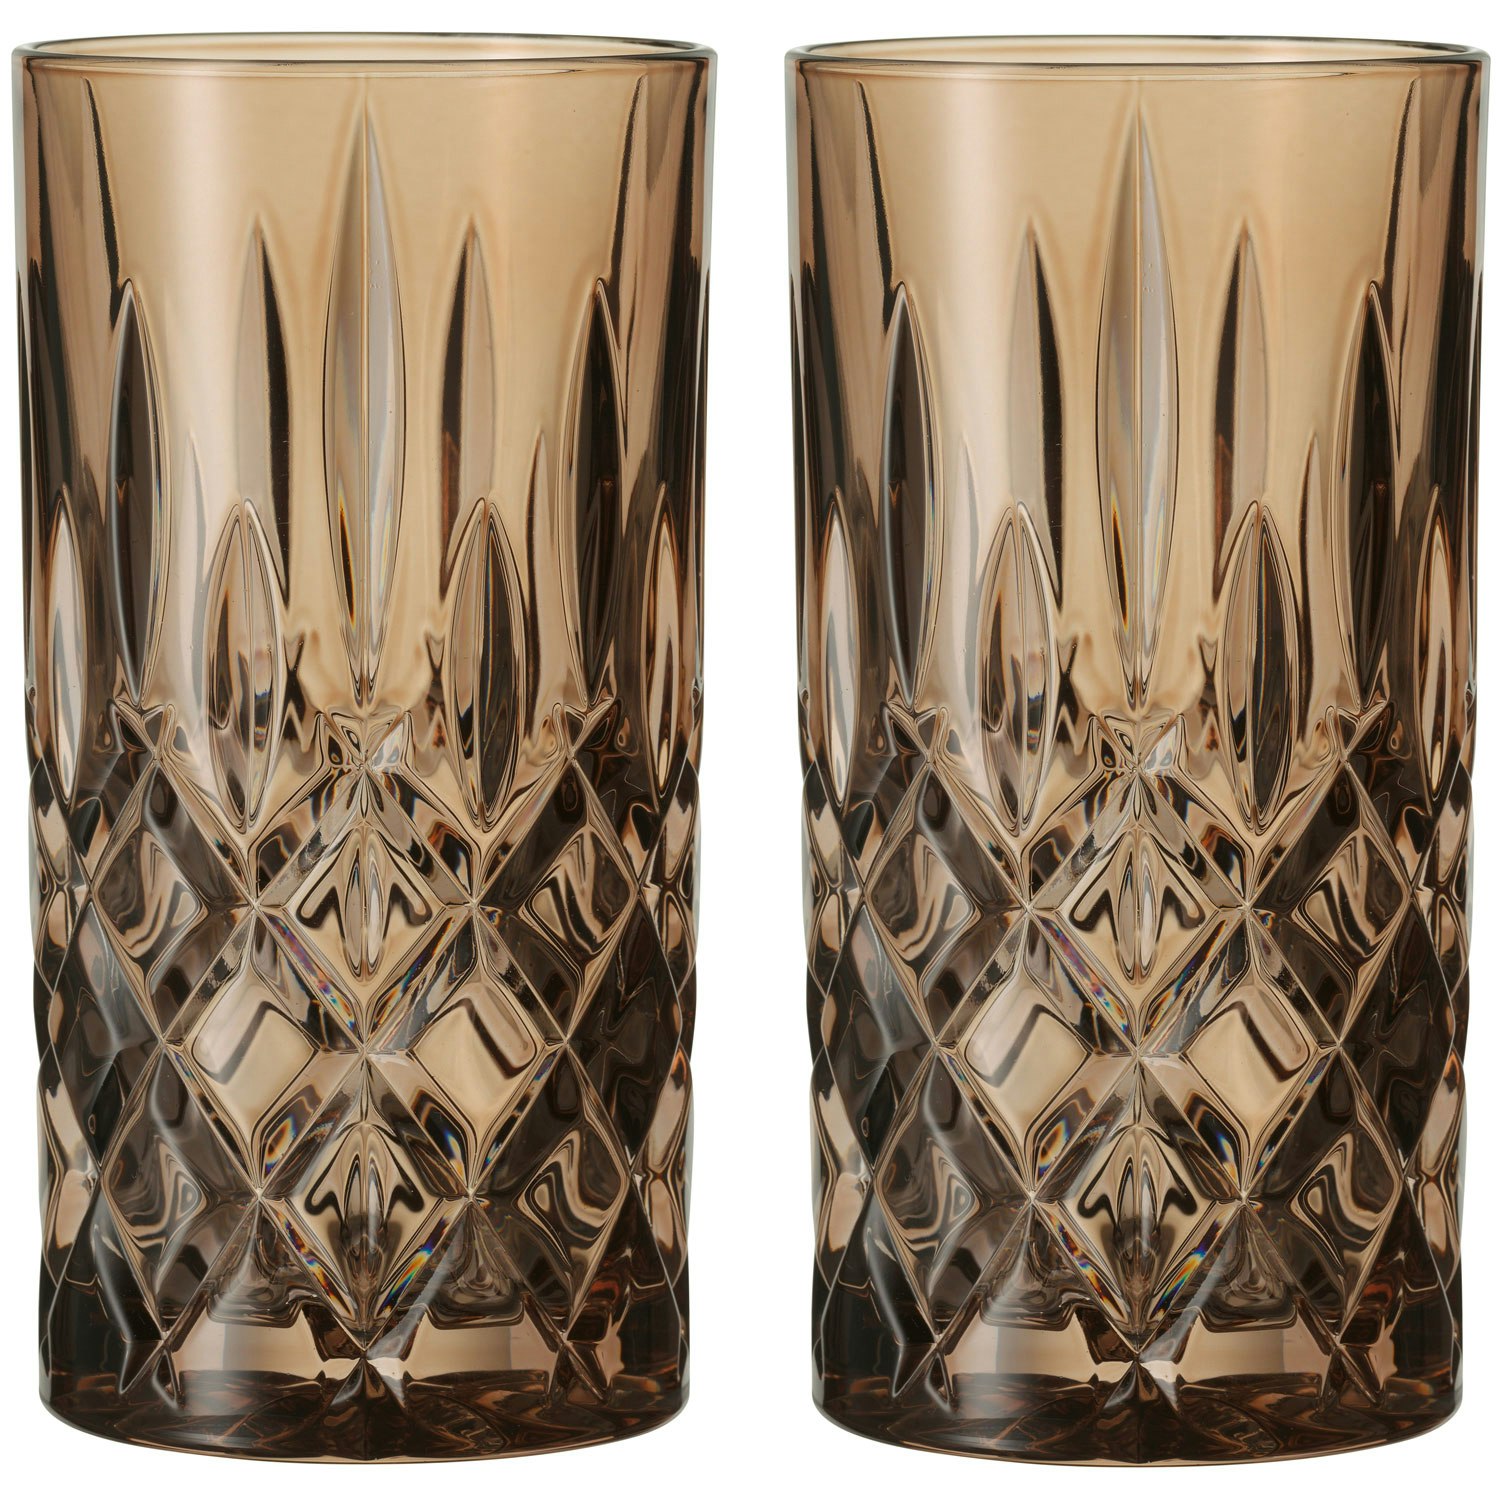 https://royaldesign.com/image/2/nachtmann-noblesse-longdrink-glass-2-pack-37-cl-9